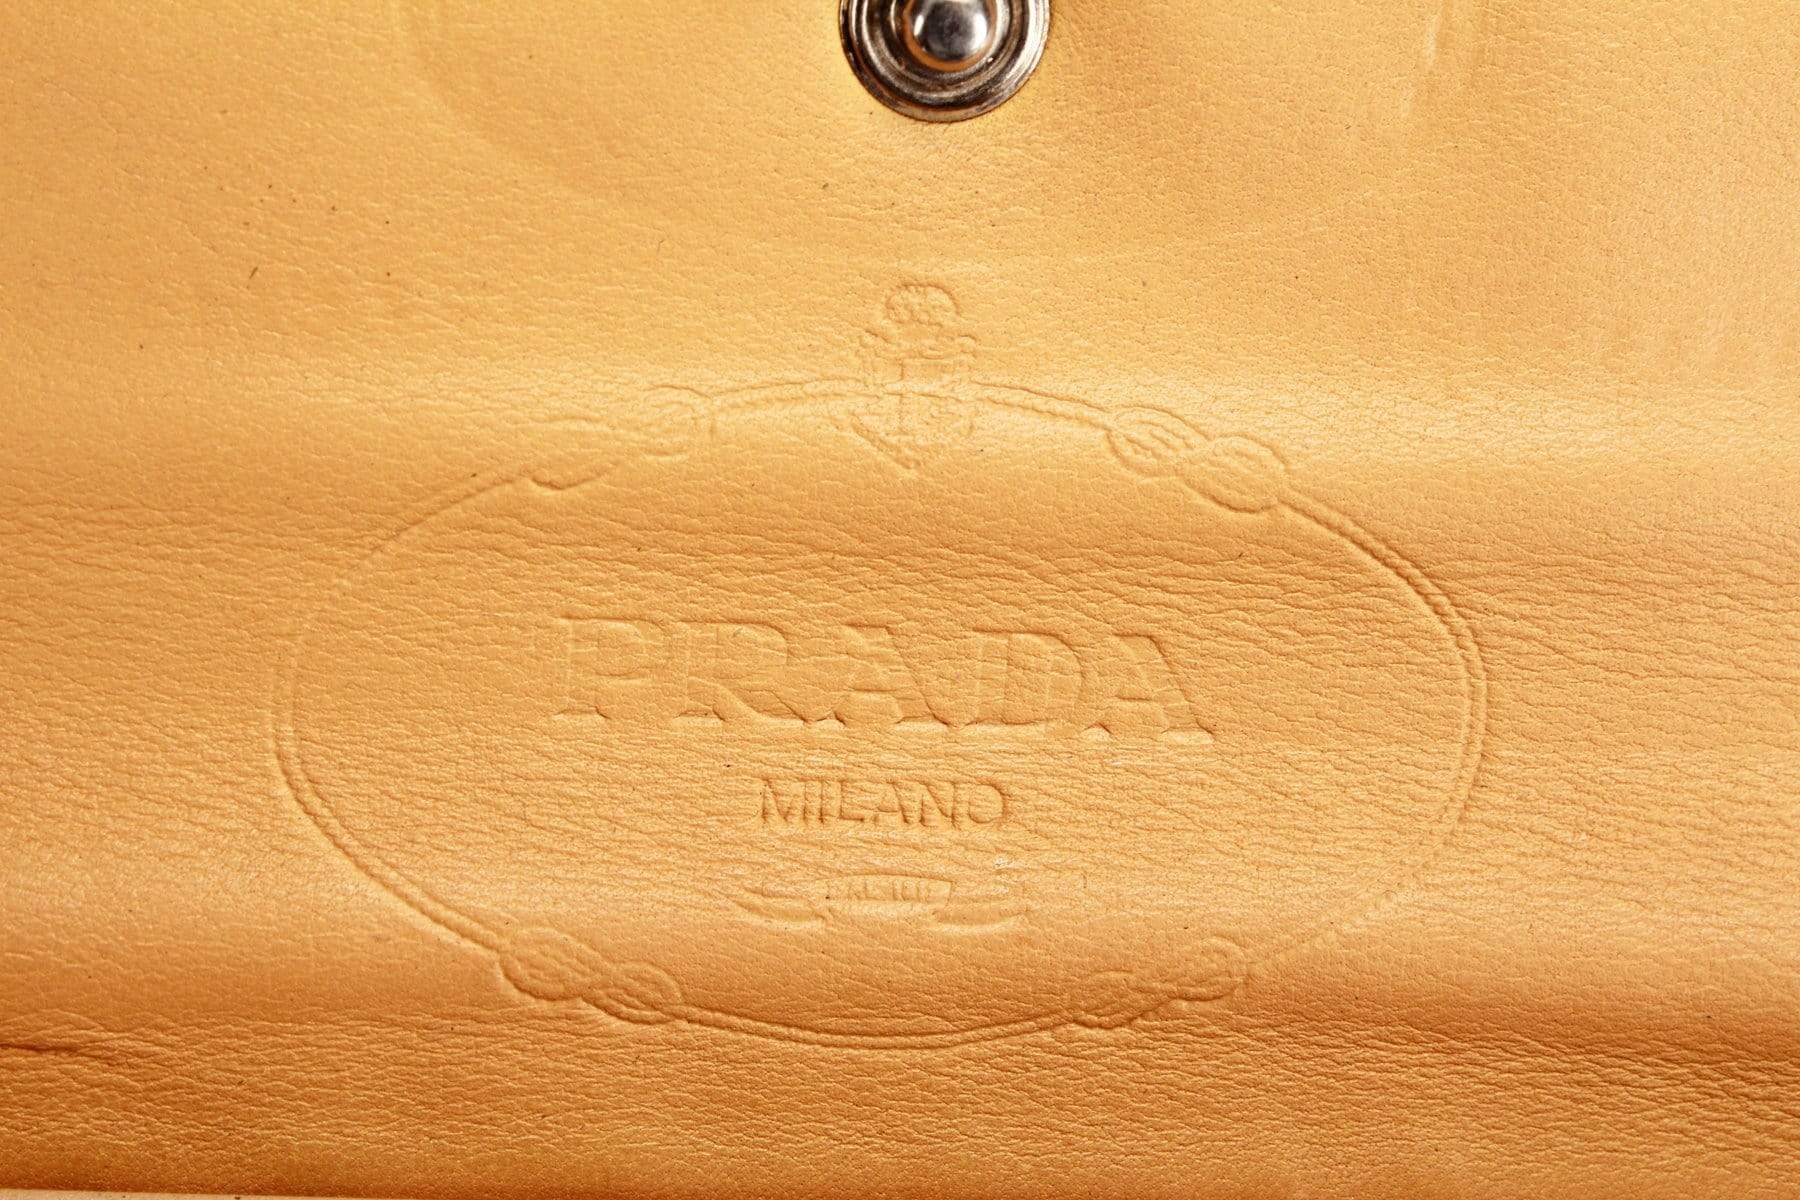 Prada Prada Calf Leather Wallet